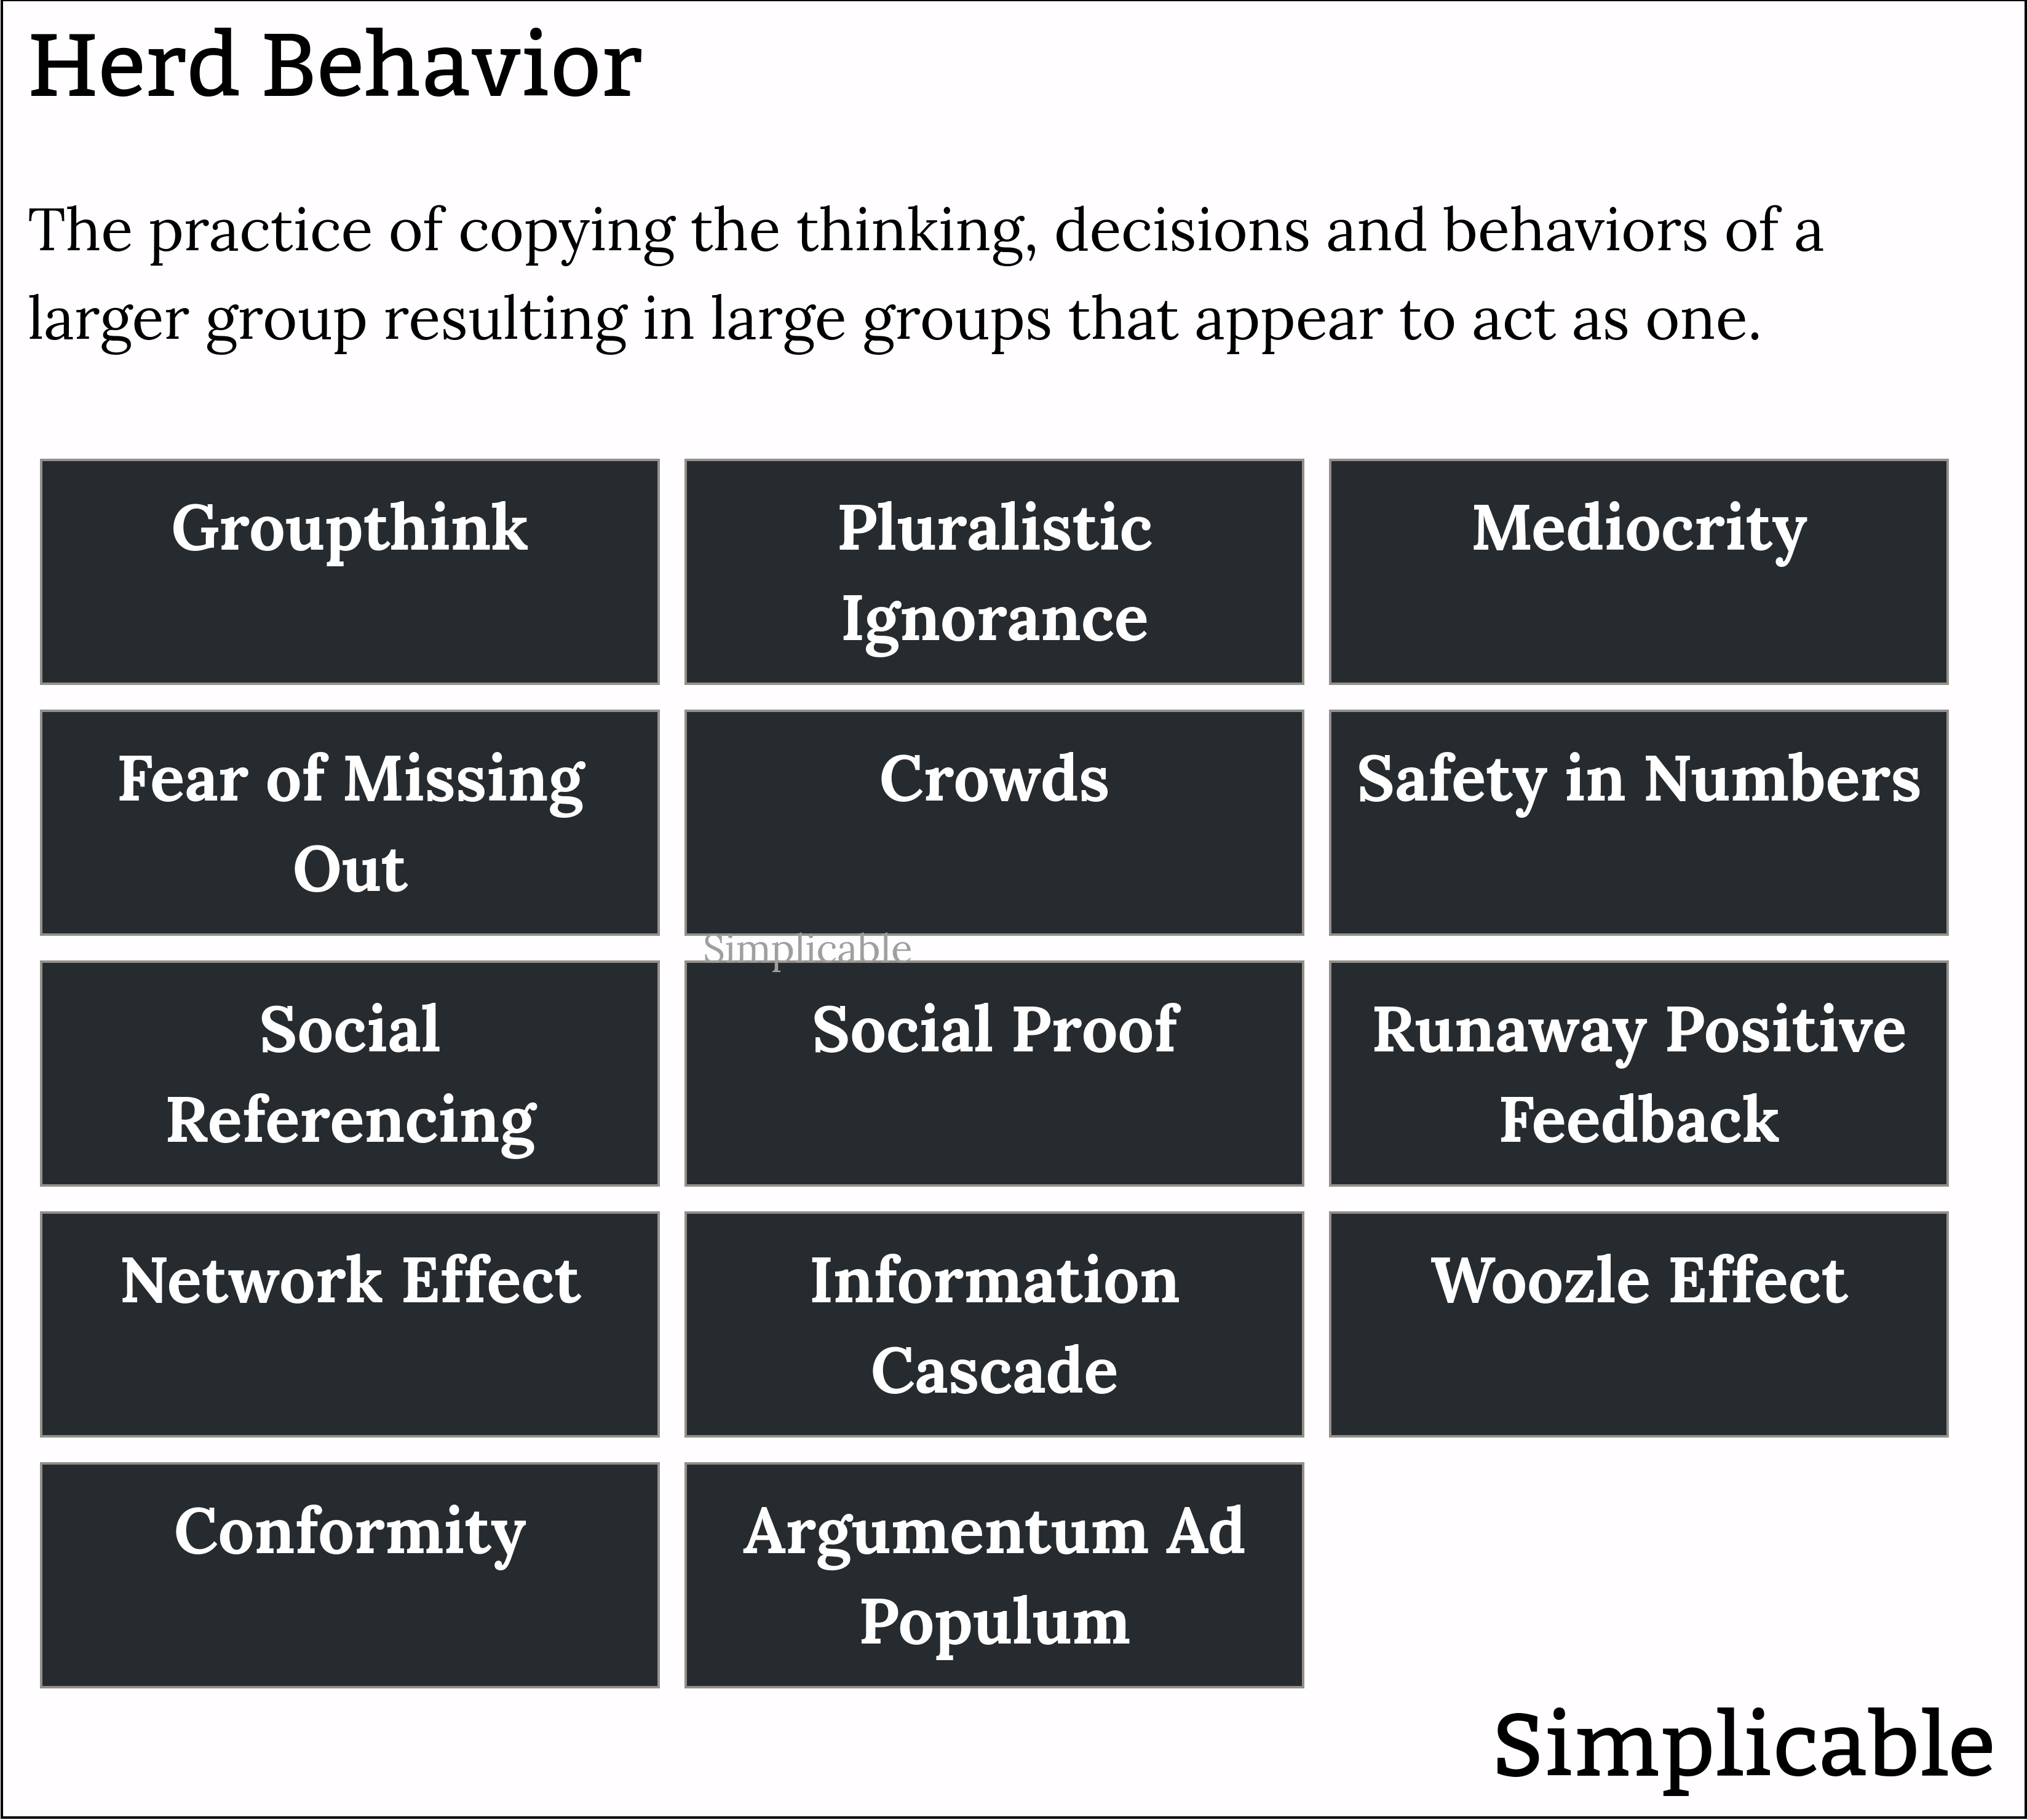 types of herd behavior in human groups